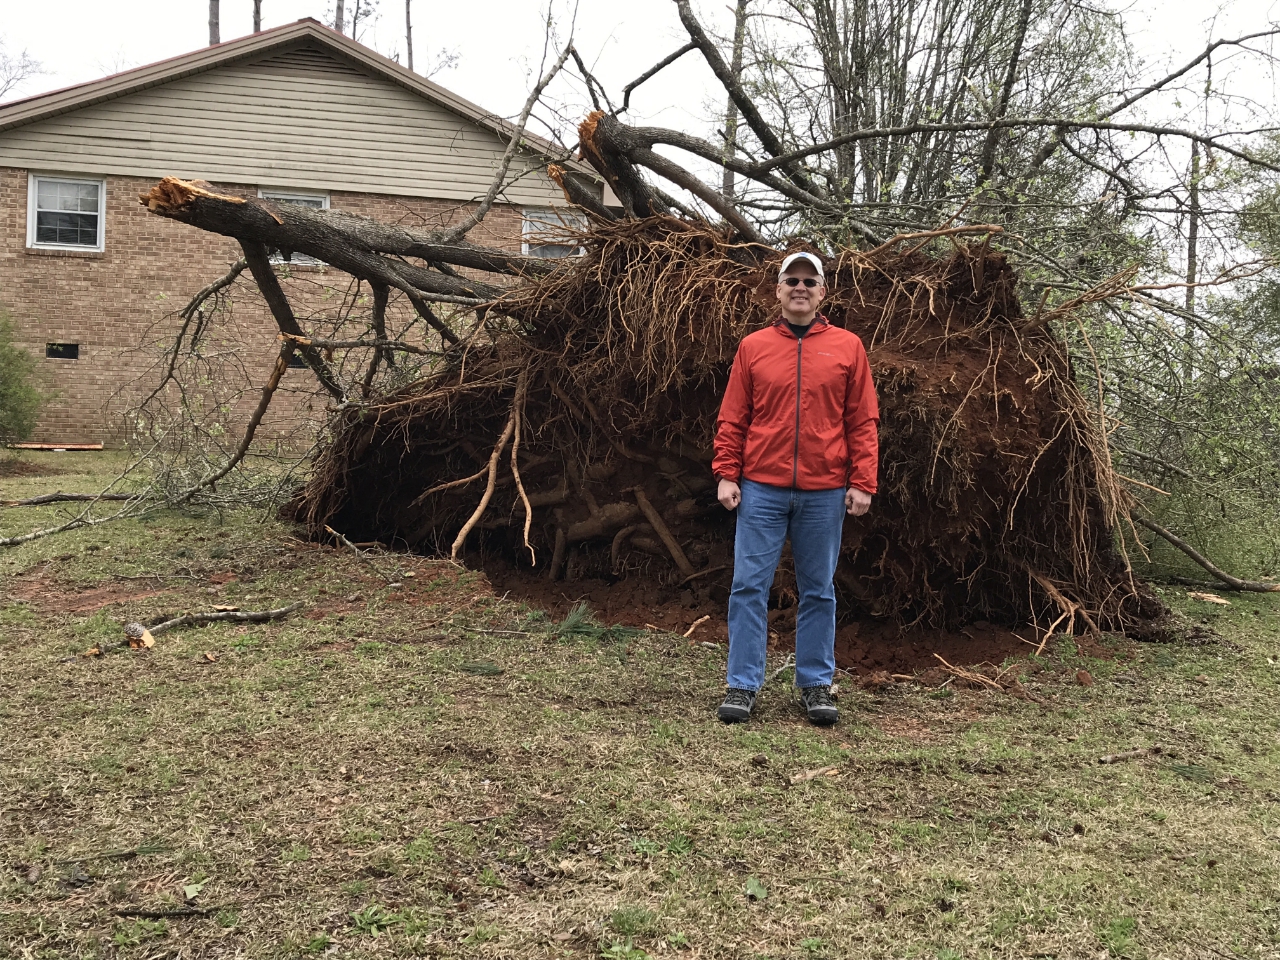 Edgefield County Tornado March 3rd, 20191280 x 960